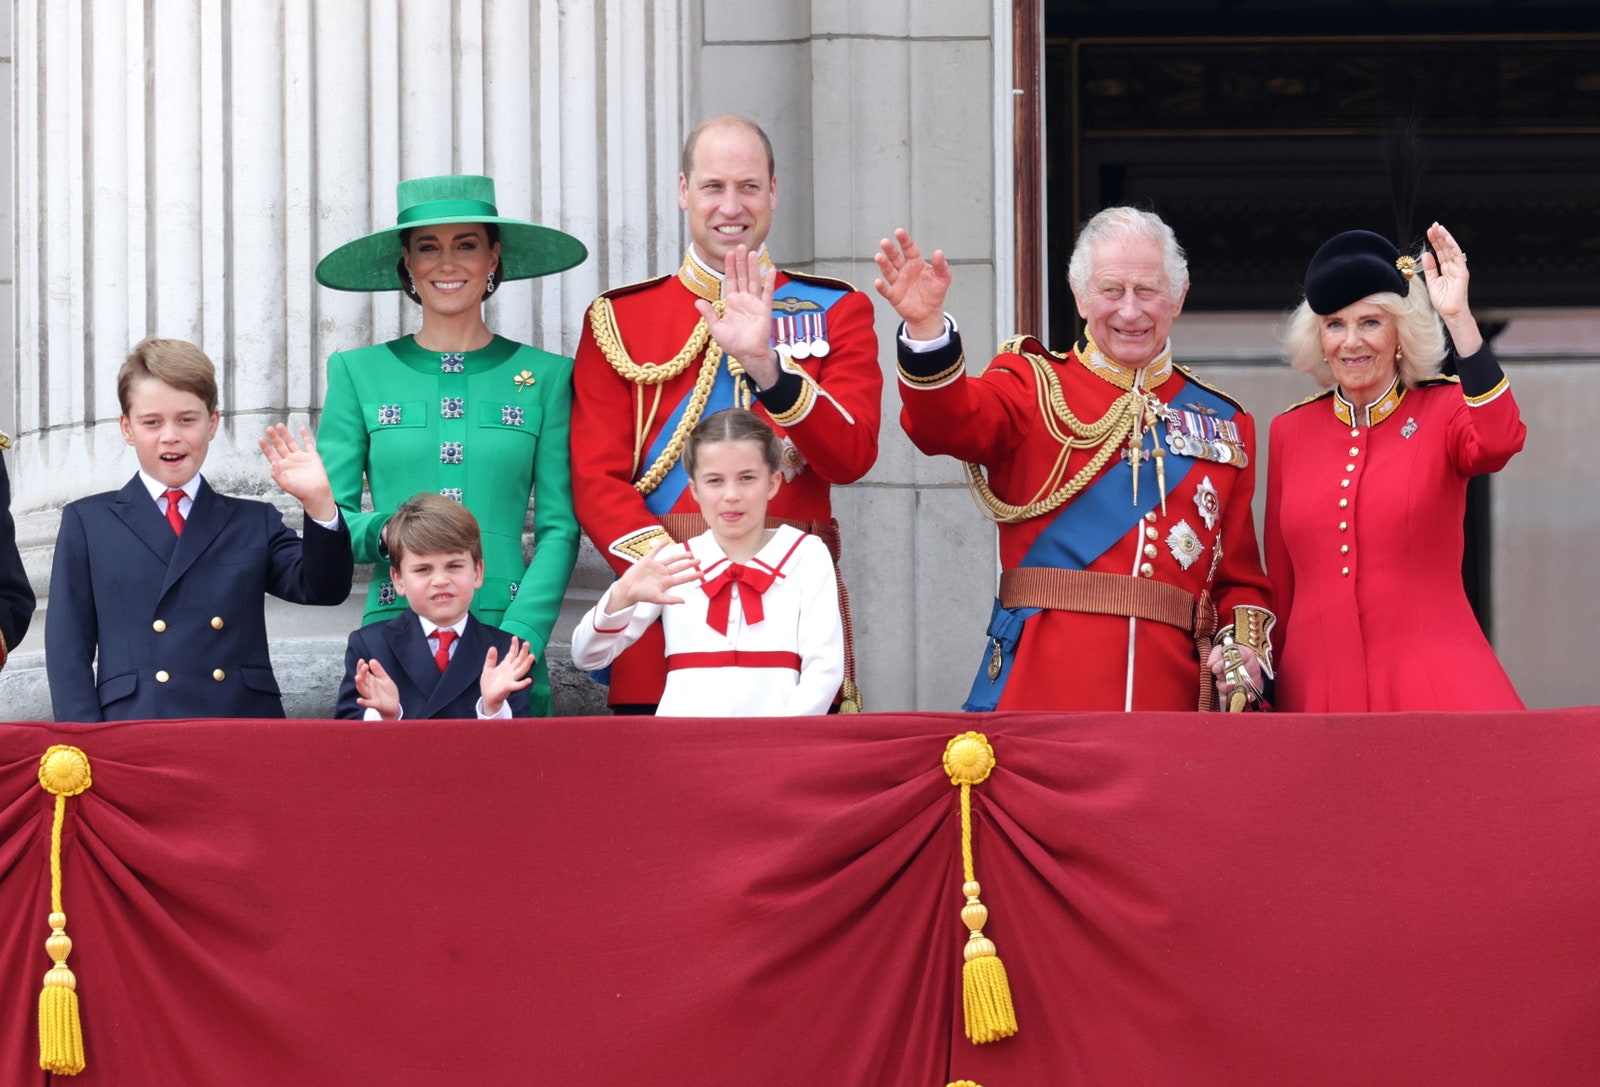 התמונה עשויה להכיל את צ'ארלס הנסיך מוויילס הנסיך וויליאם הדוכס מקיימברידג' הנסיך ג'ורג' מקיימברידג' ואדם